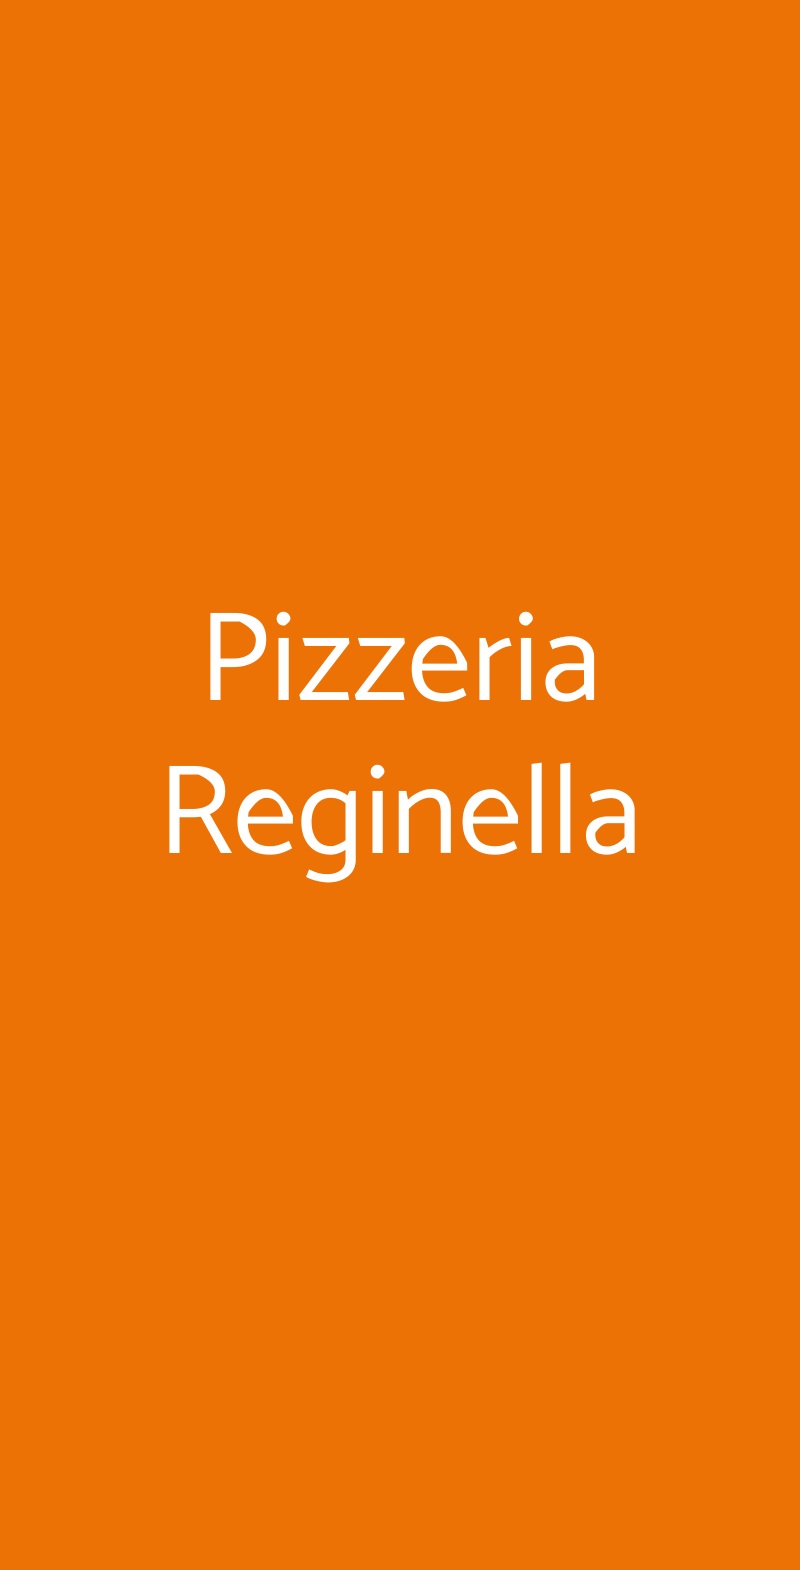 Pizzeria Reginella Napoli menù 1 pagina